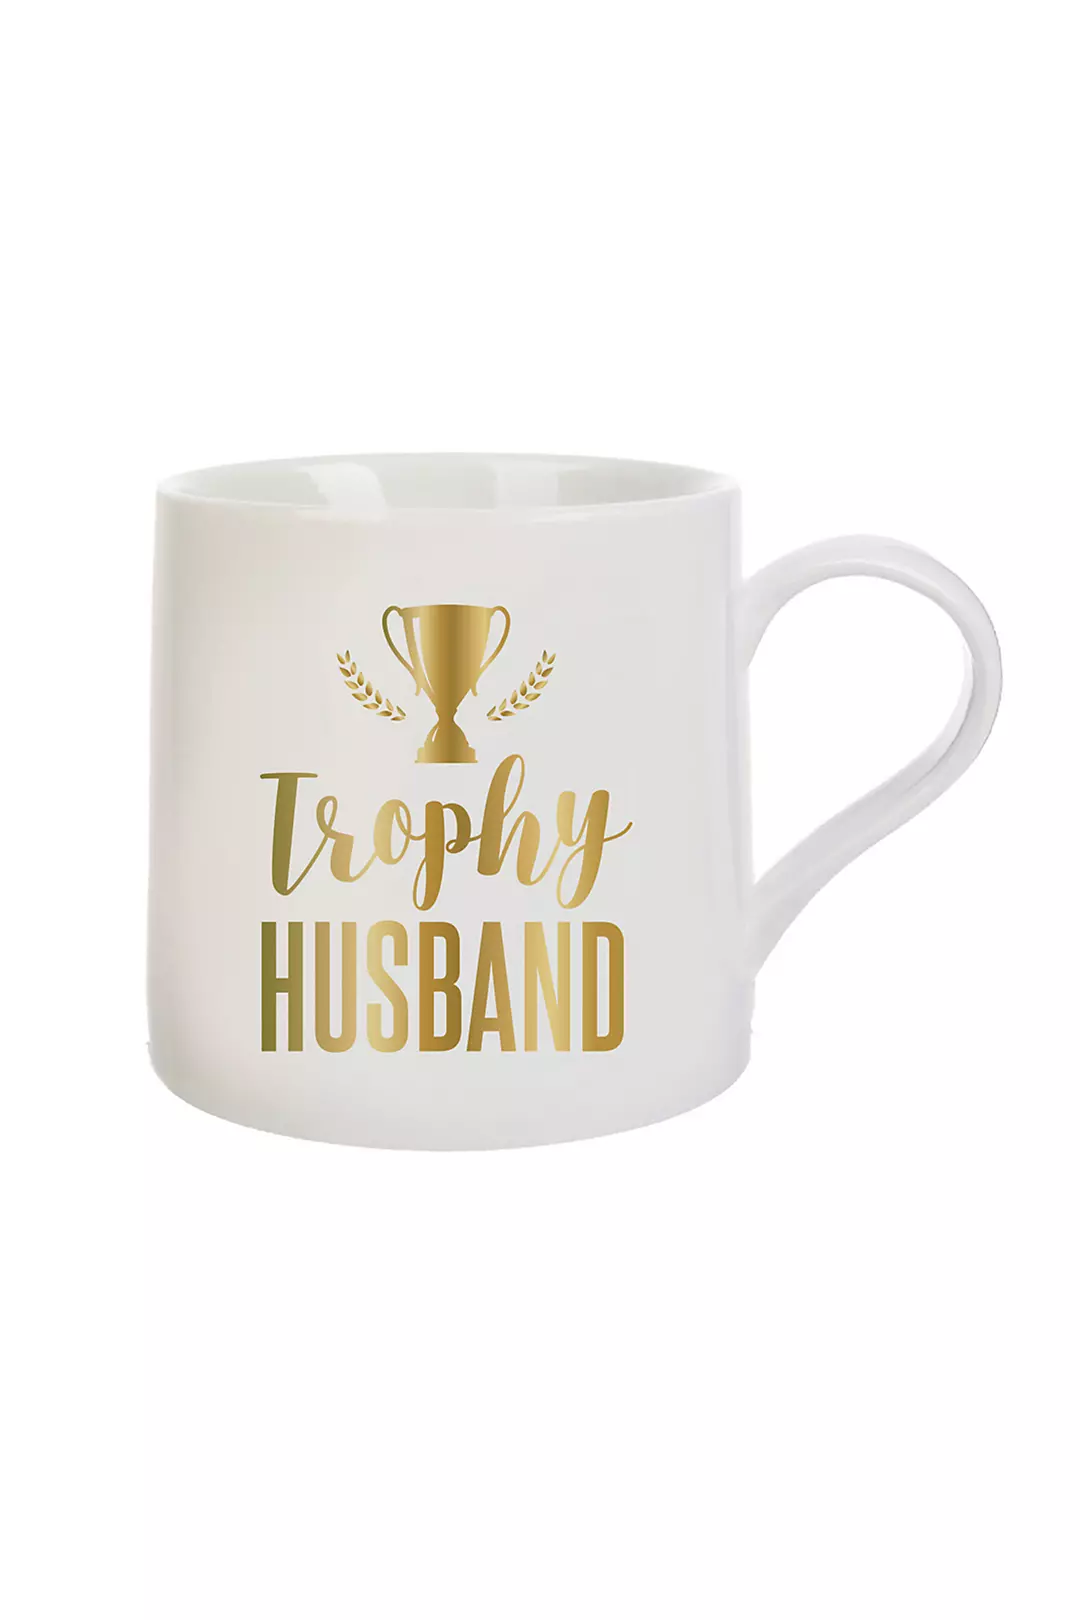 Trophy Husband Mug Image